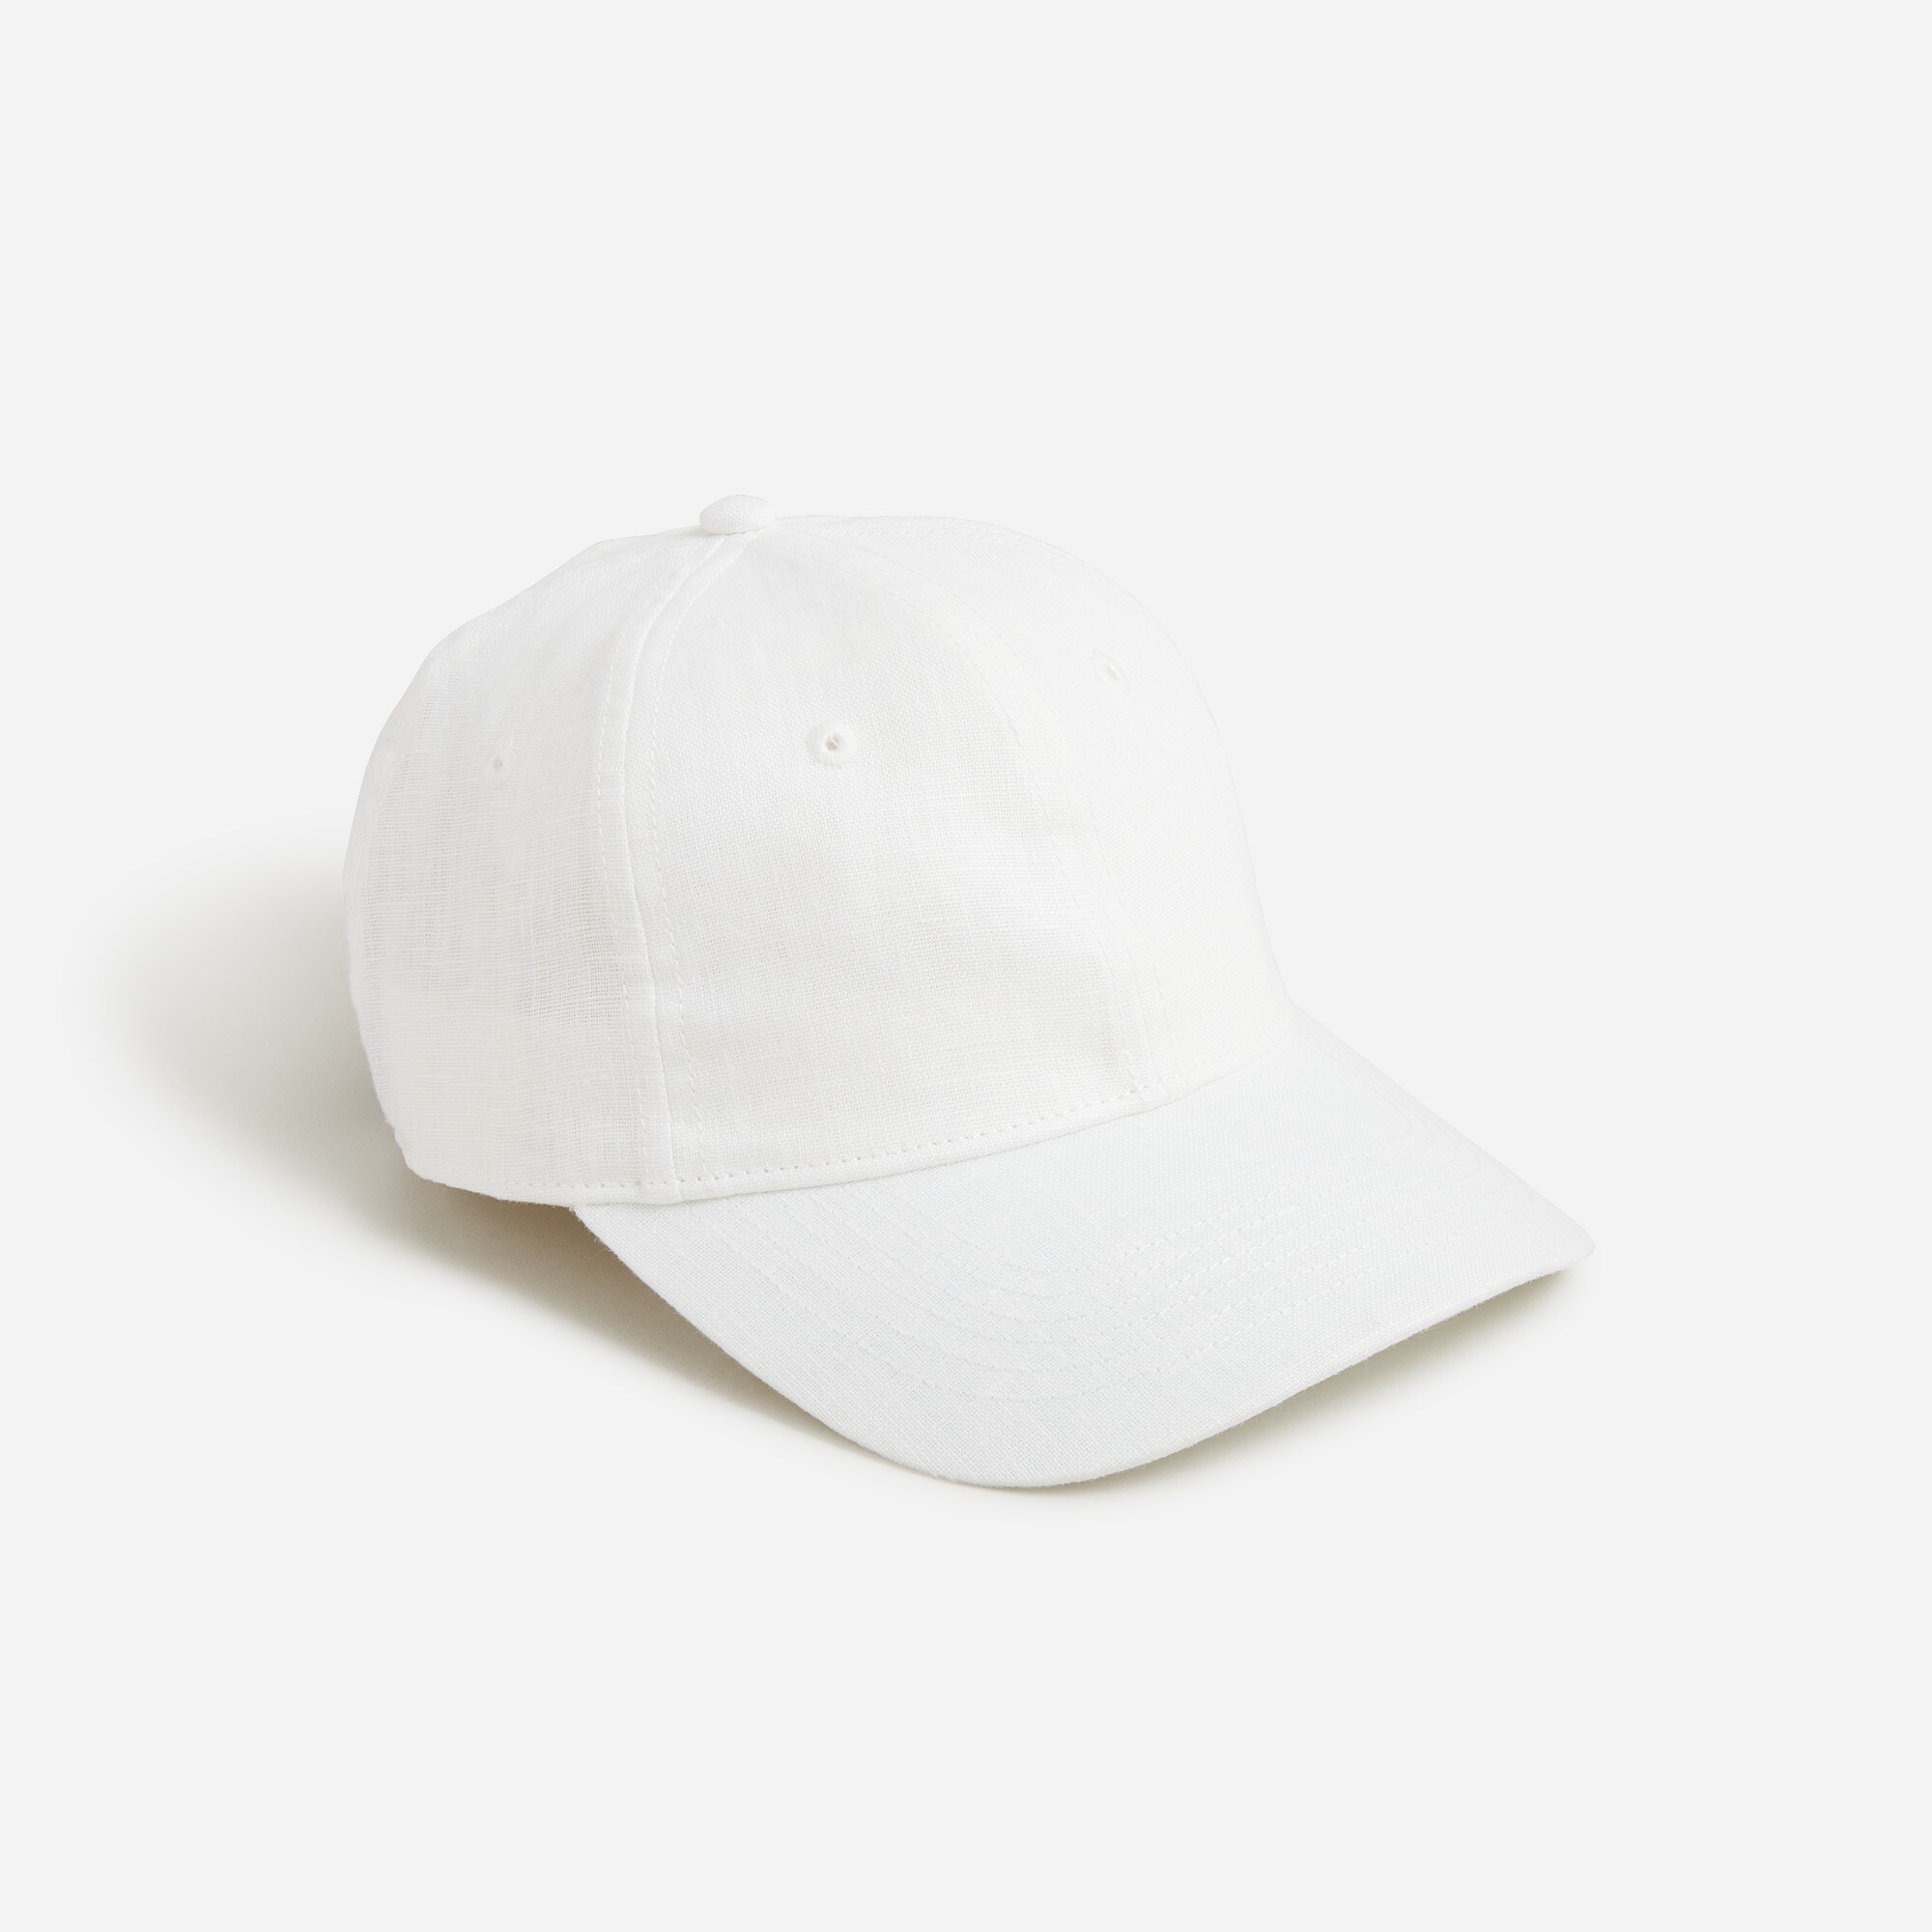  Linen baseball cap